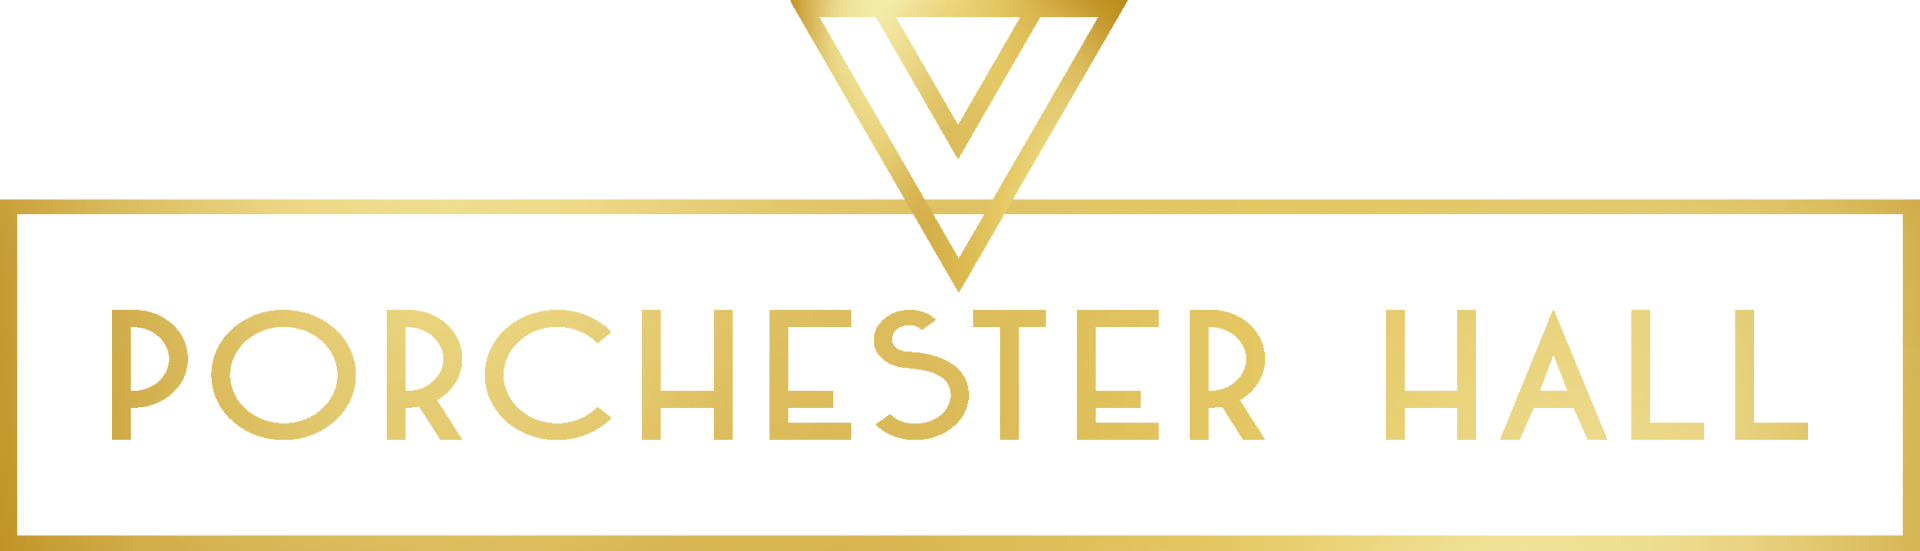 Porchester Hall logo